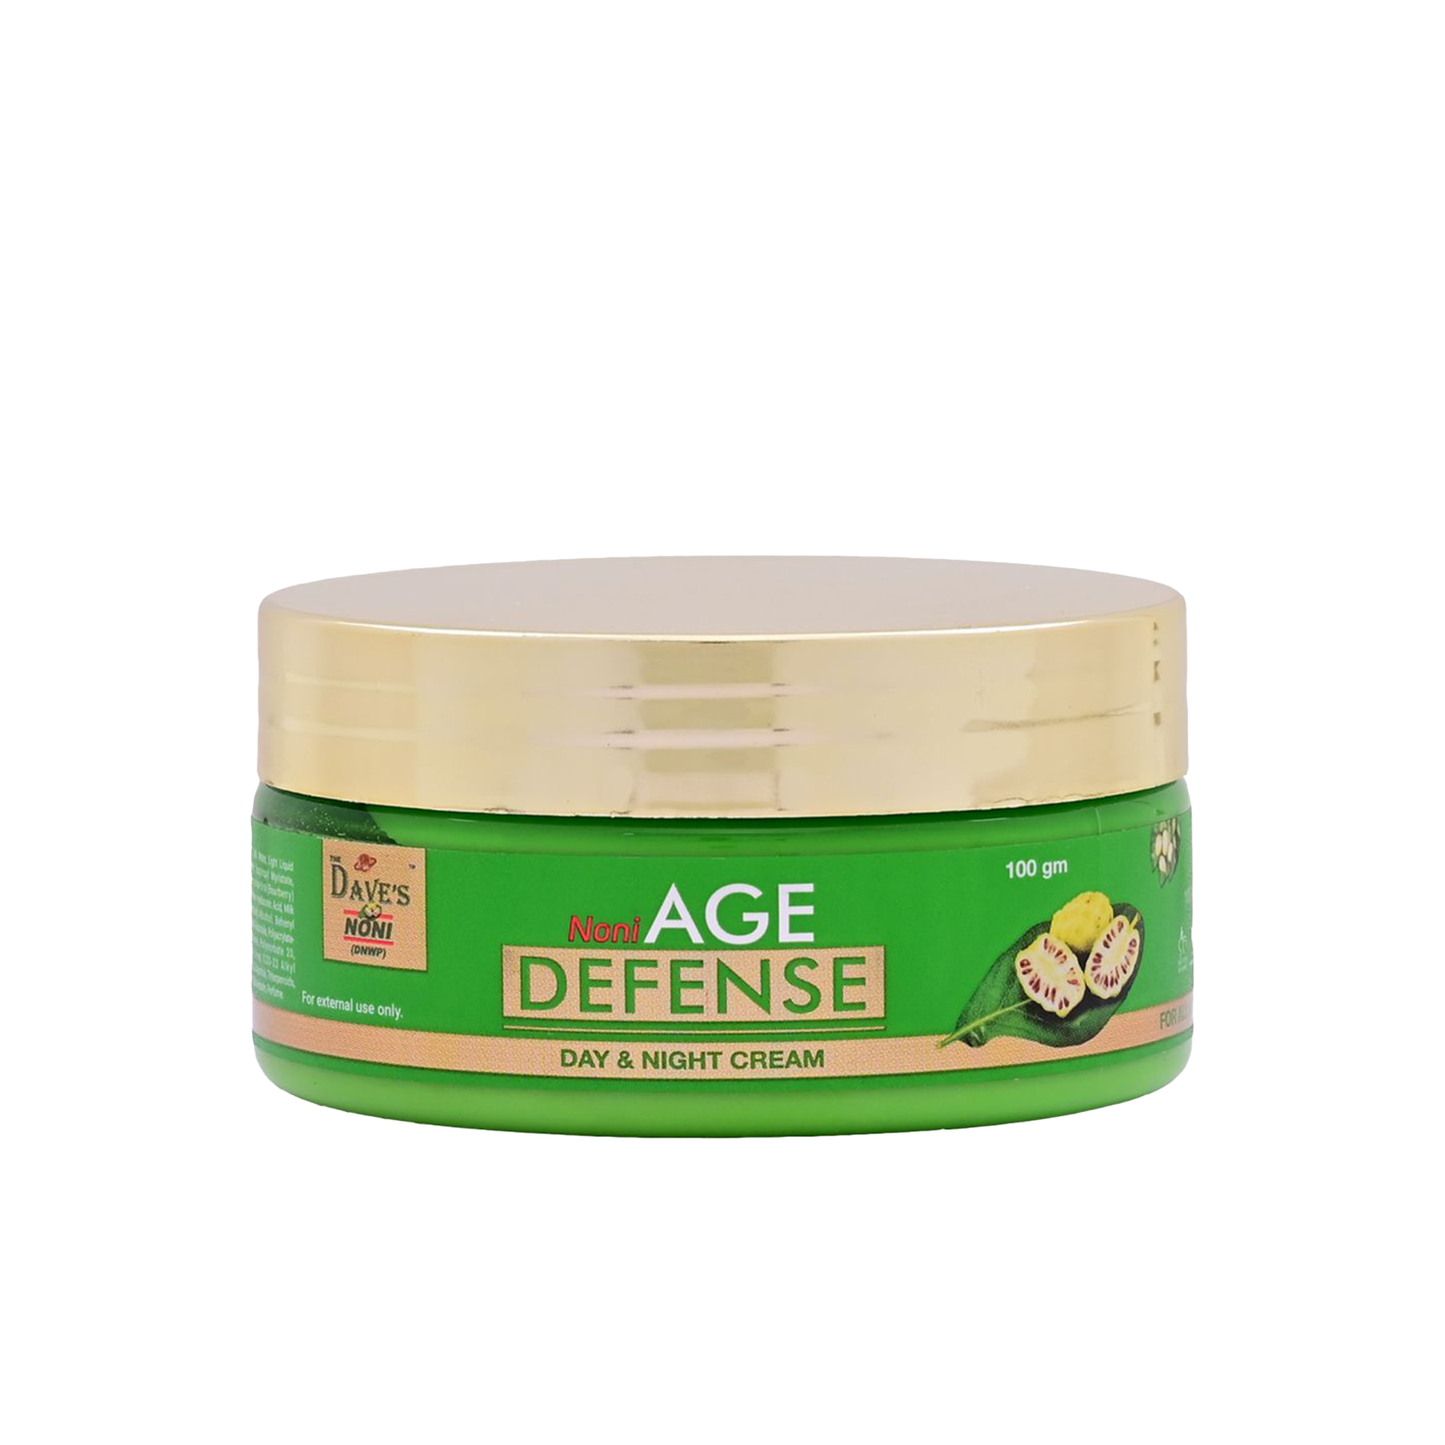 The Dave's Noni Age Defense Day & Night Skin Cream, 100gm